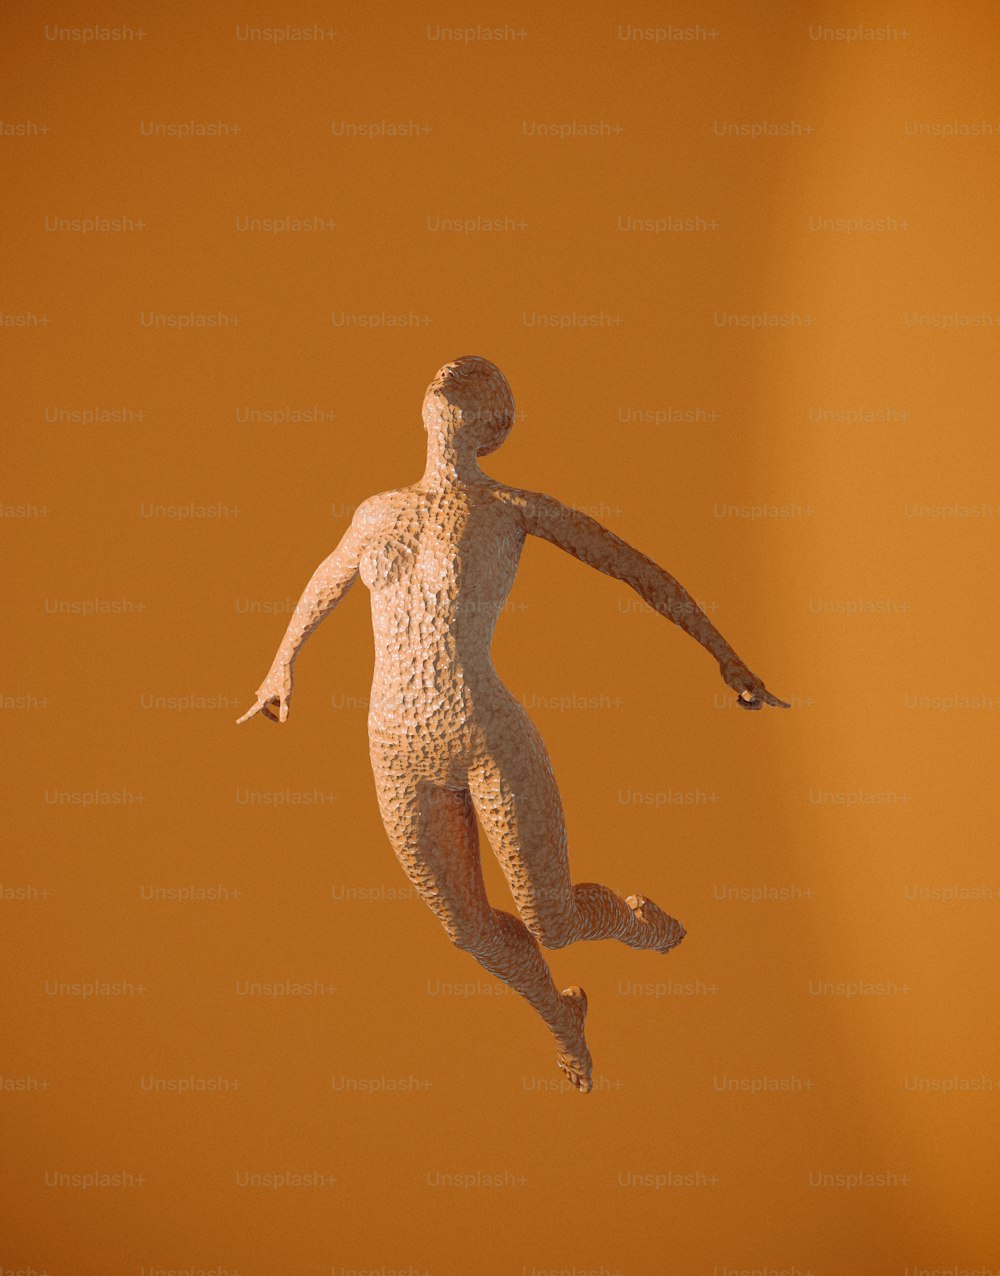 uma estátua de um homem voando pelo ar